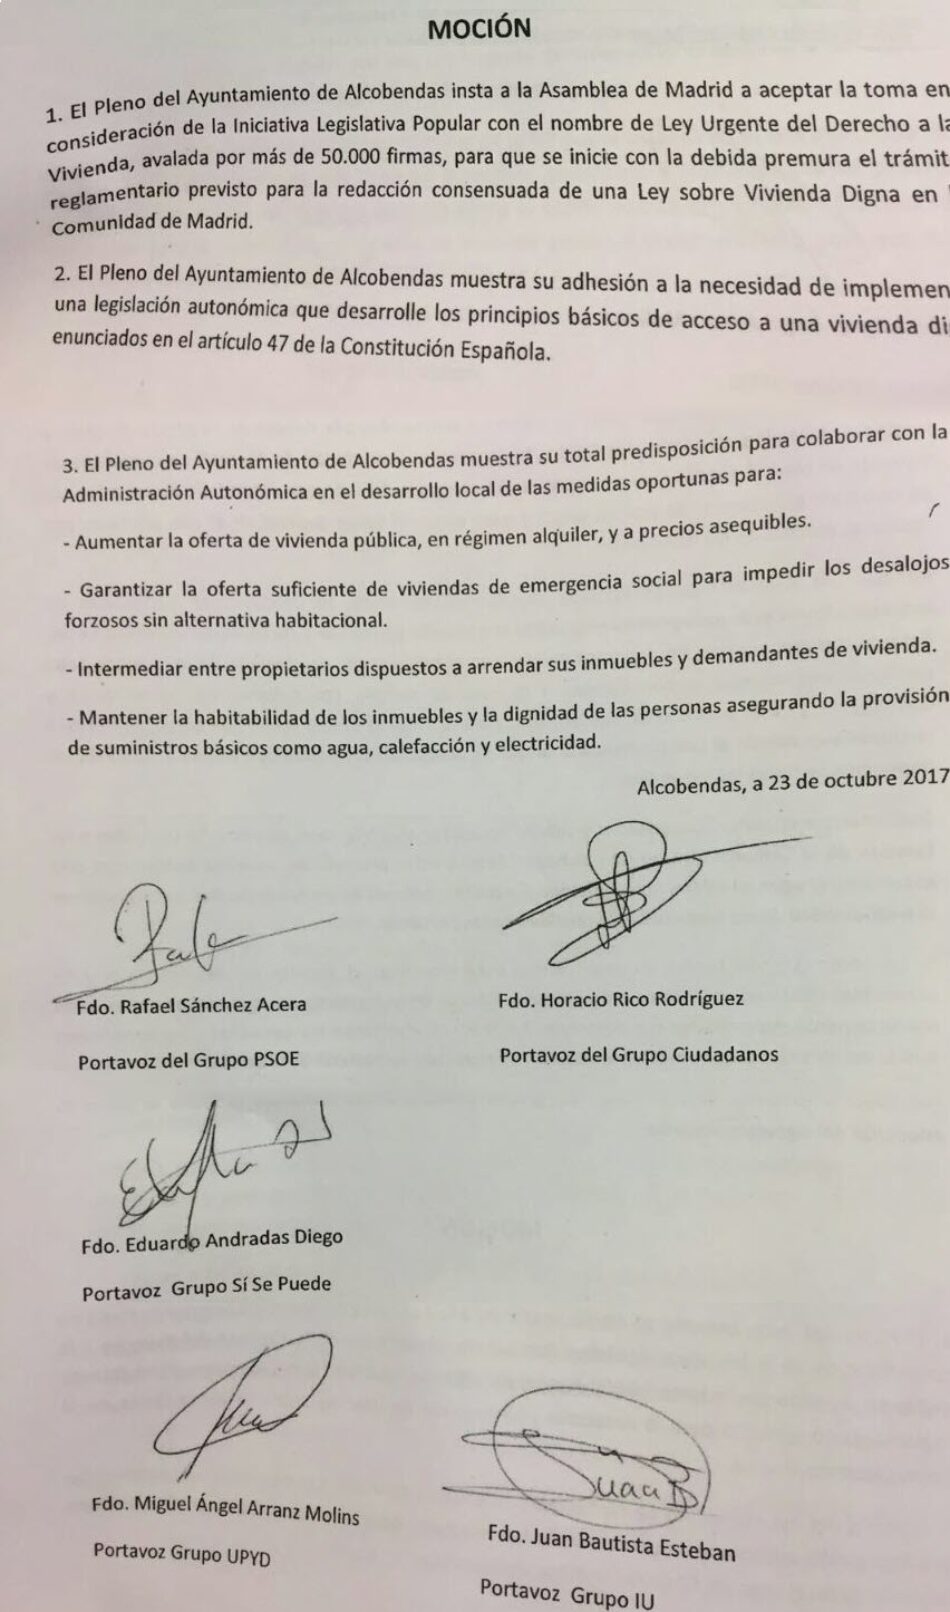 El Ayuntamiento de Alcobendas insta a la Asamblea de Madrid a debatir la Iniciativa Legislativa Popular de Vivienda